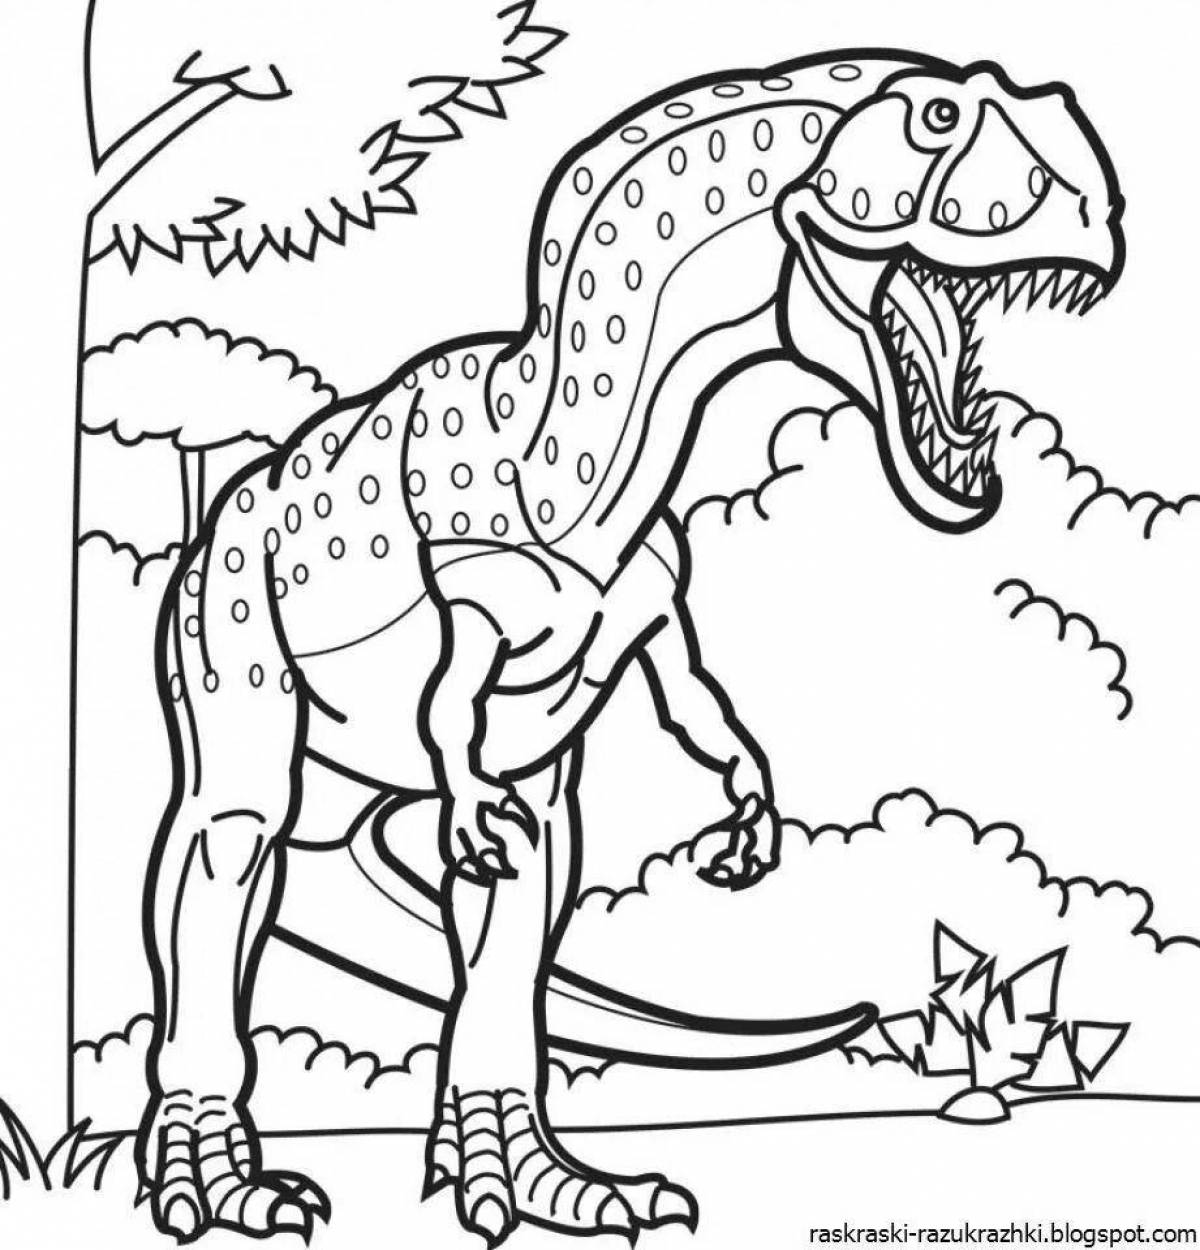 Яркая раскраска динозавров для мальчиков 5-6 лет